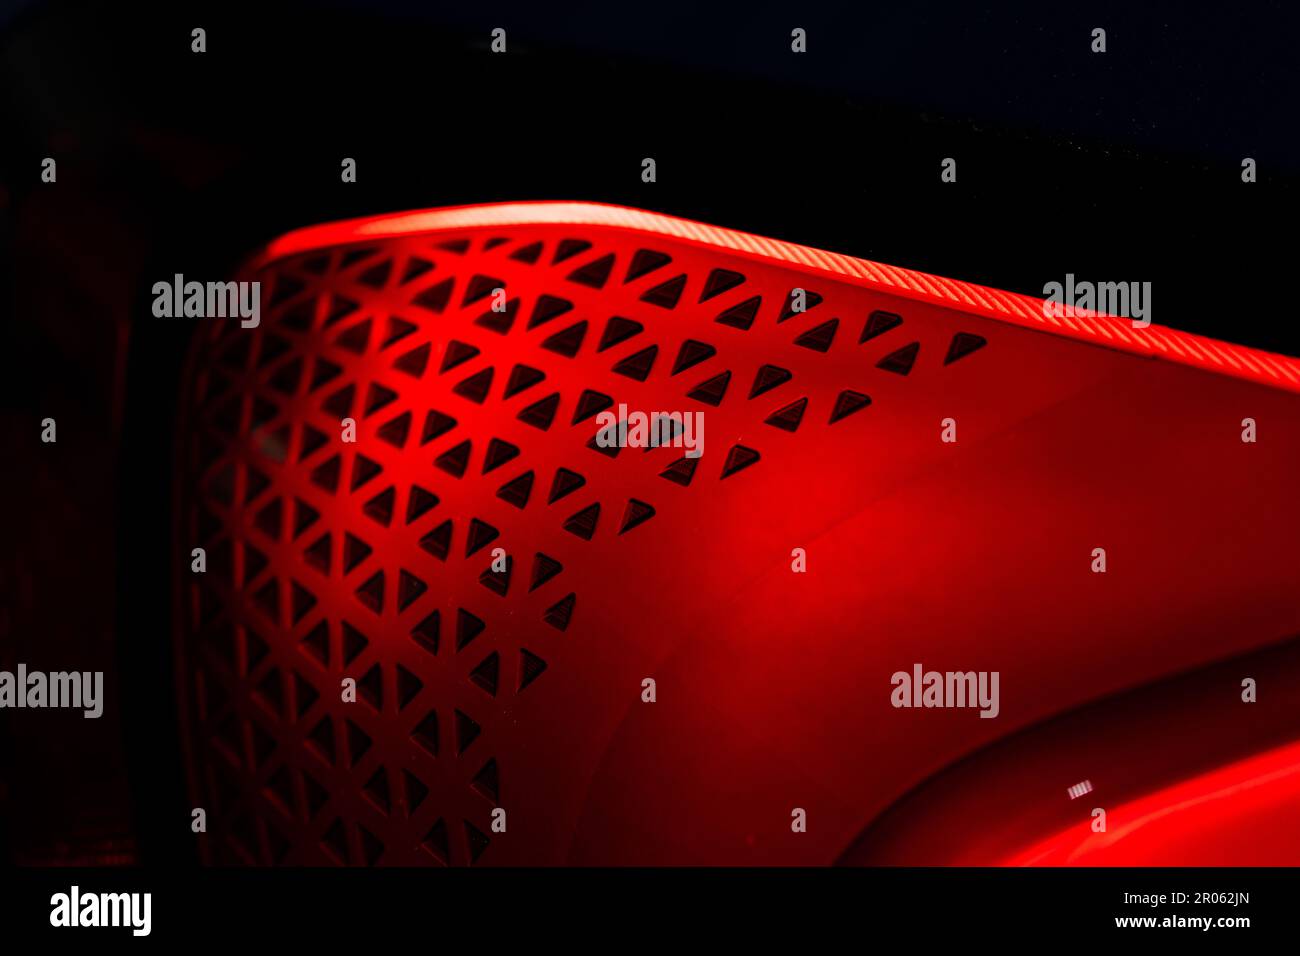 Dettaglio schema geometrico nel fanalino di coda del veicolo BMW Foto Stock